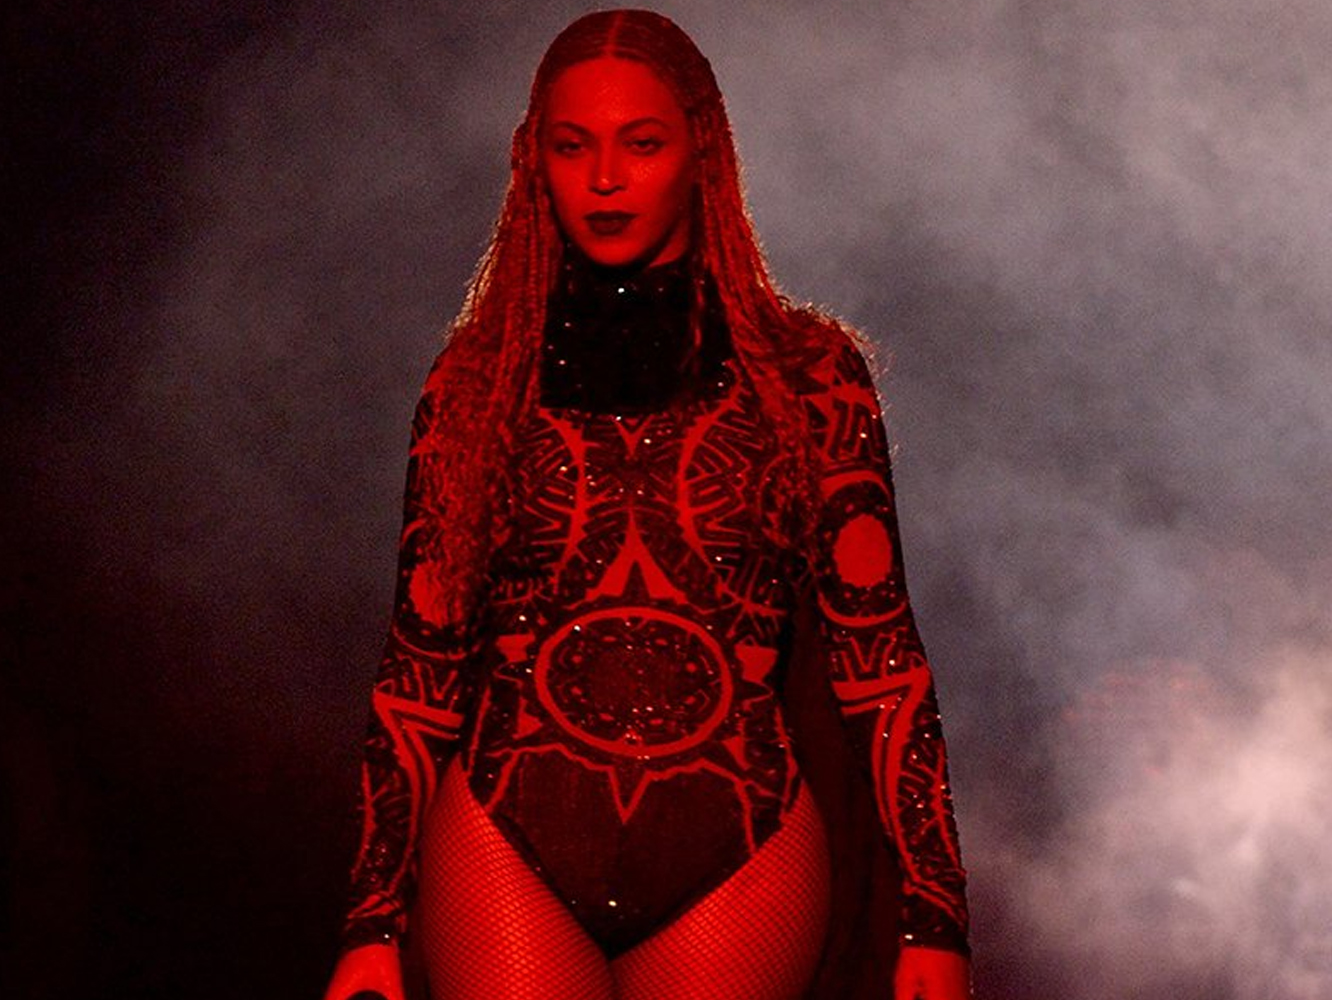  Beyoncé lanza un nuevo vídeo de ‘Freedom’ para la campaña #FreedomForGirls